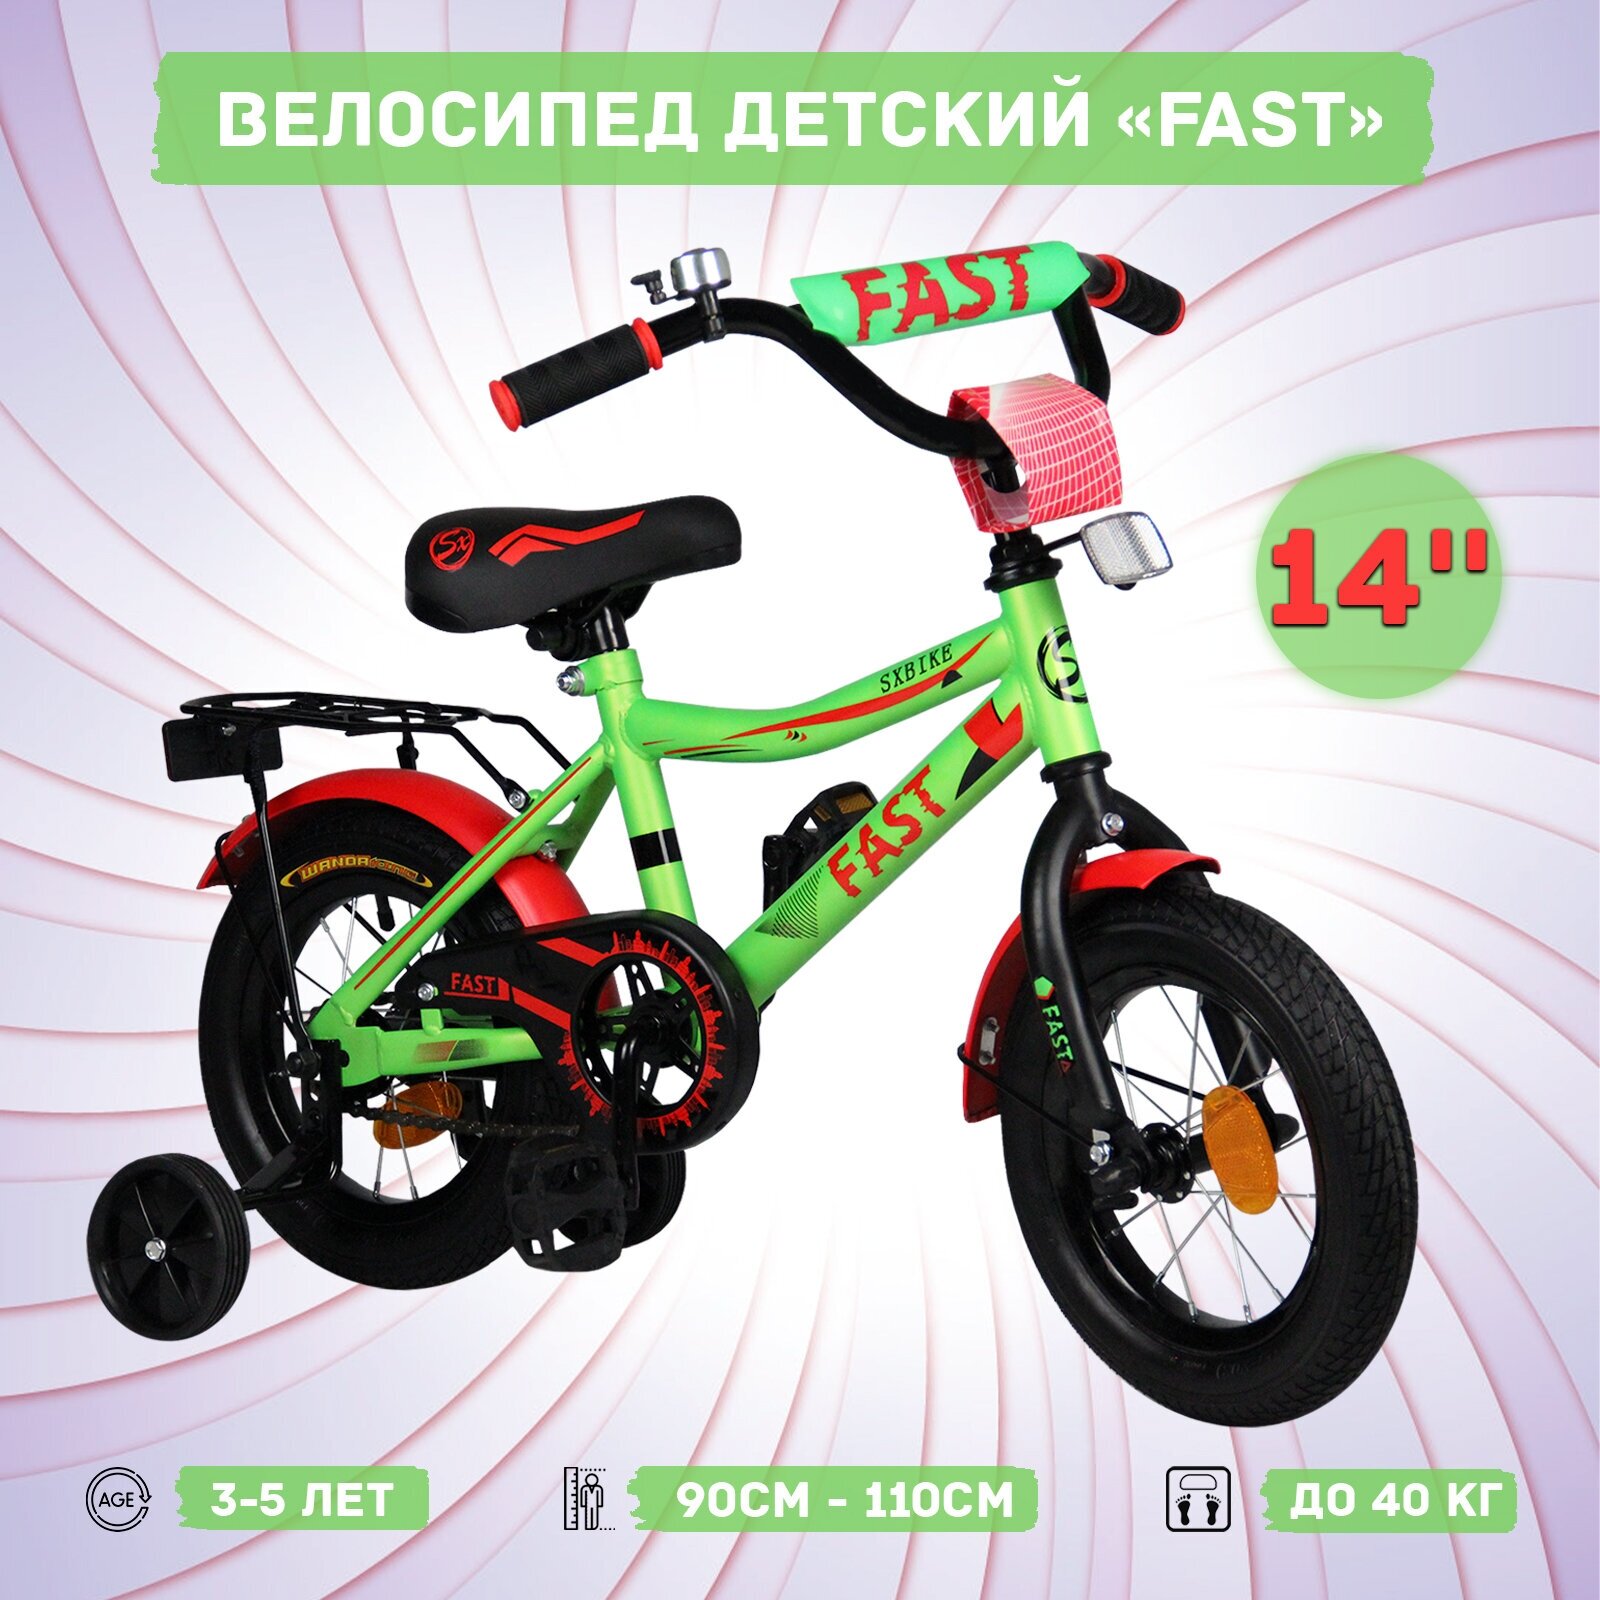 Велосипед детский Sx Bike Fast 14", зелено-красный